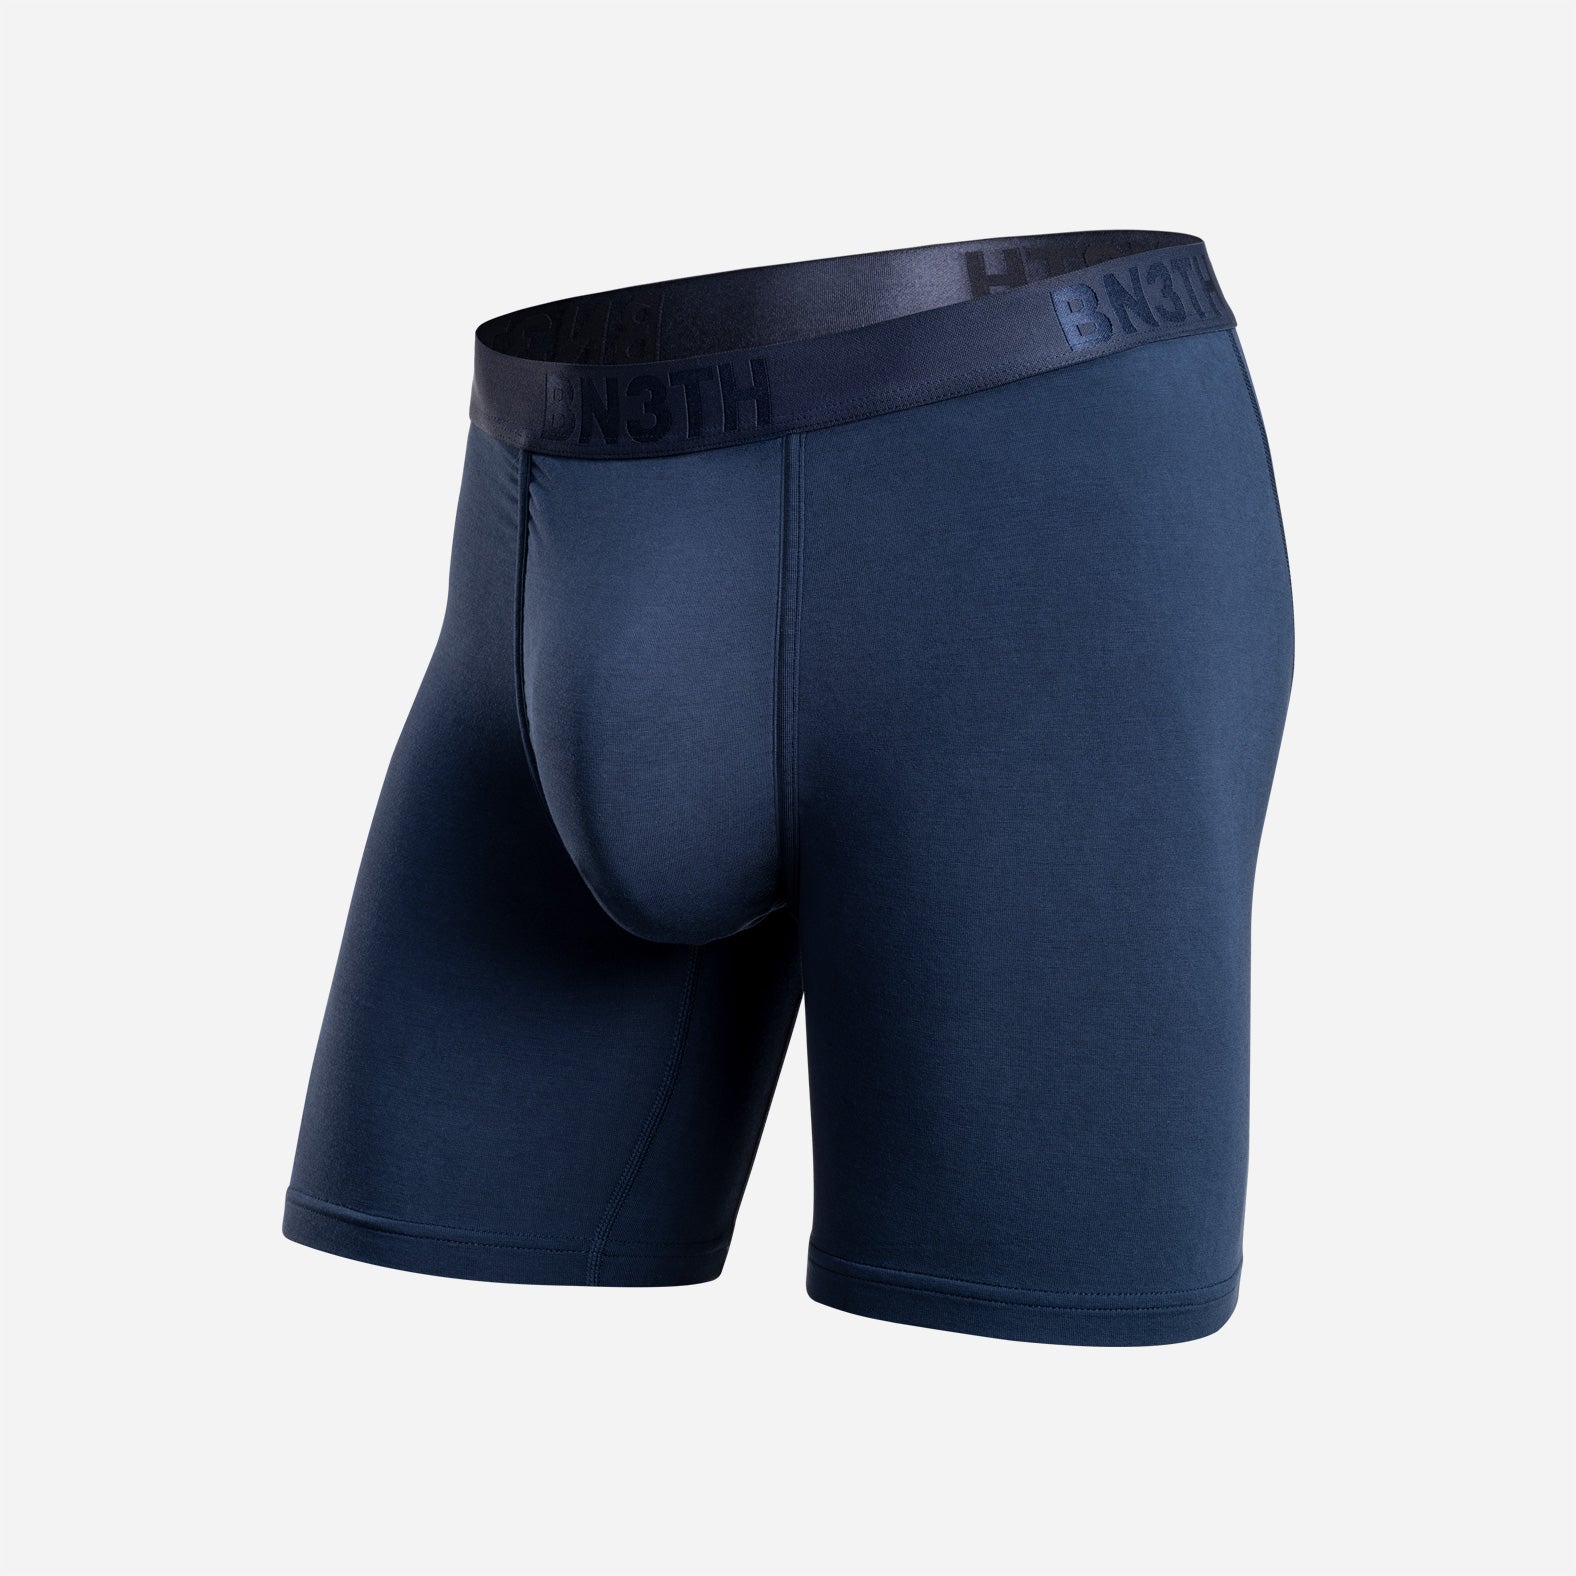 Underwear Boxer | Navy Classic Brief: – BN3TH